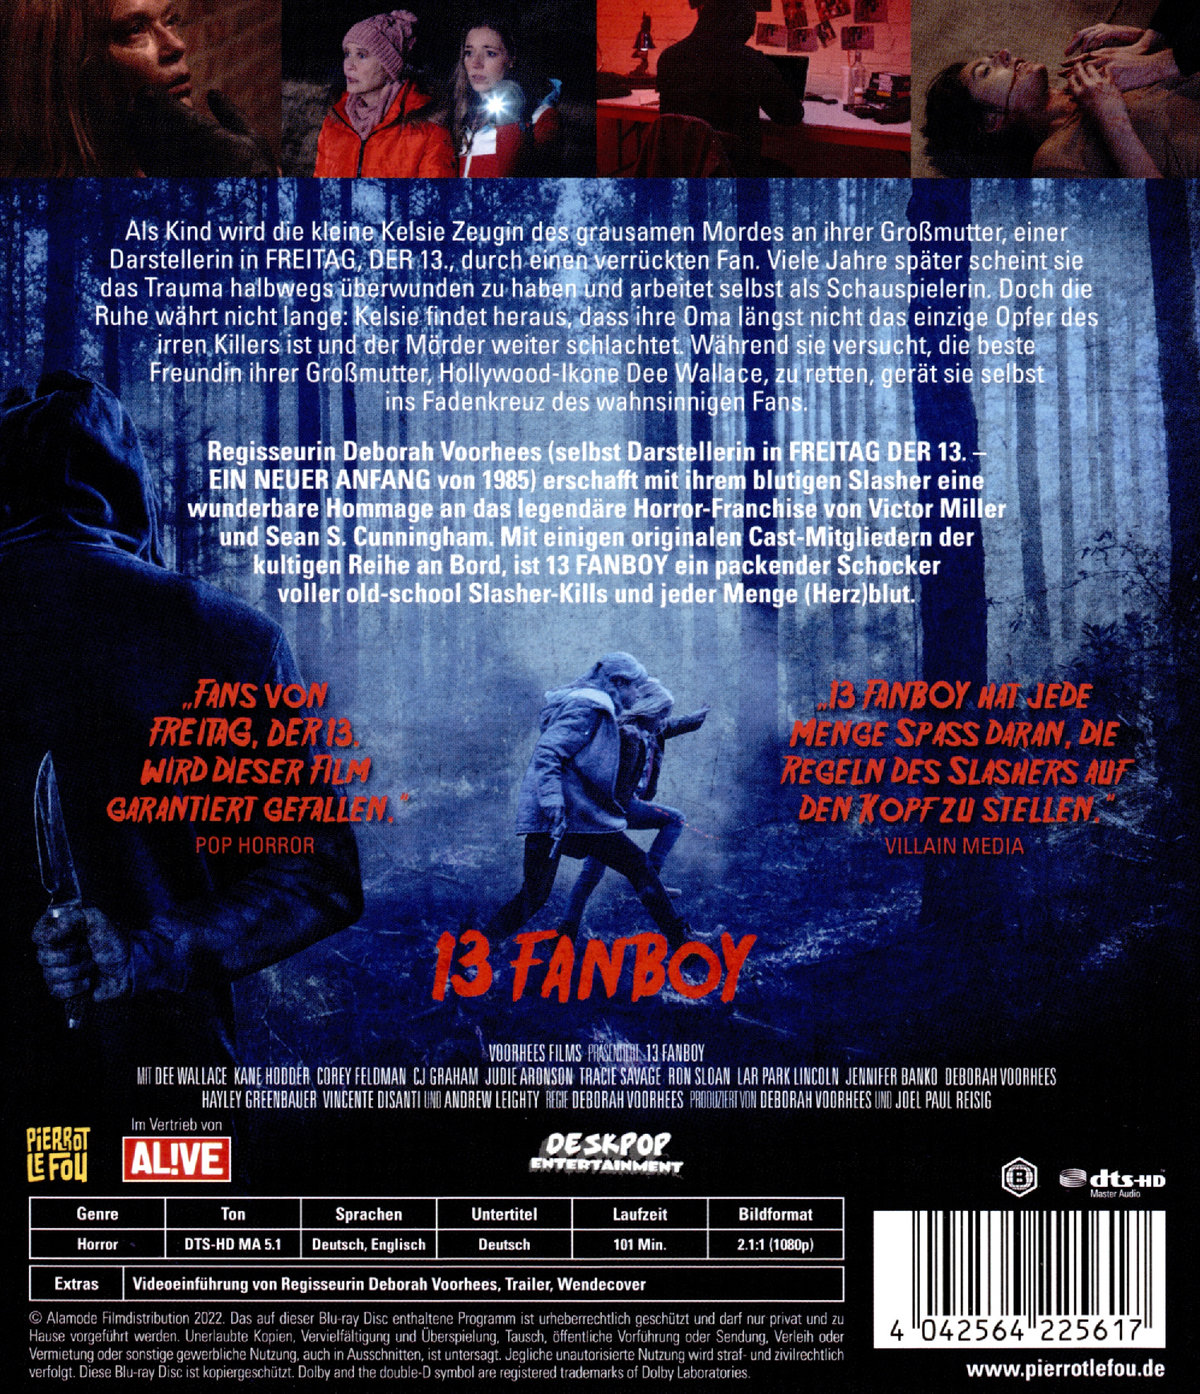 13 Fanboy - Uncut Edition (blu-ray)